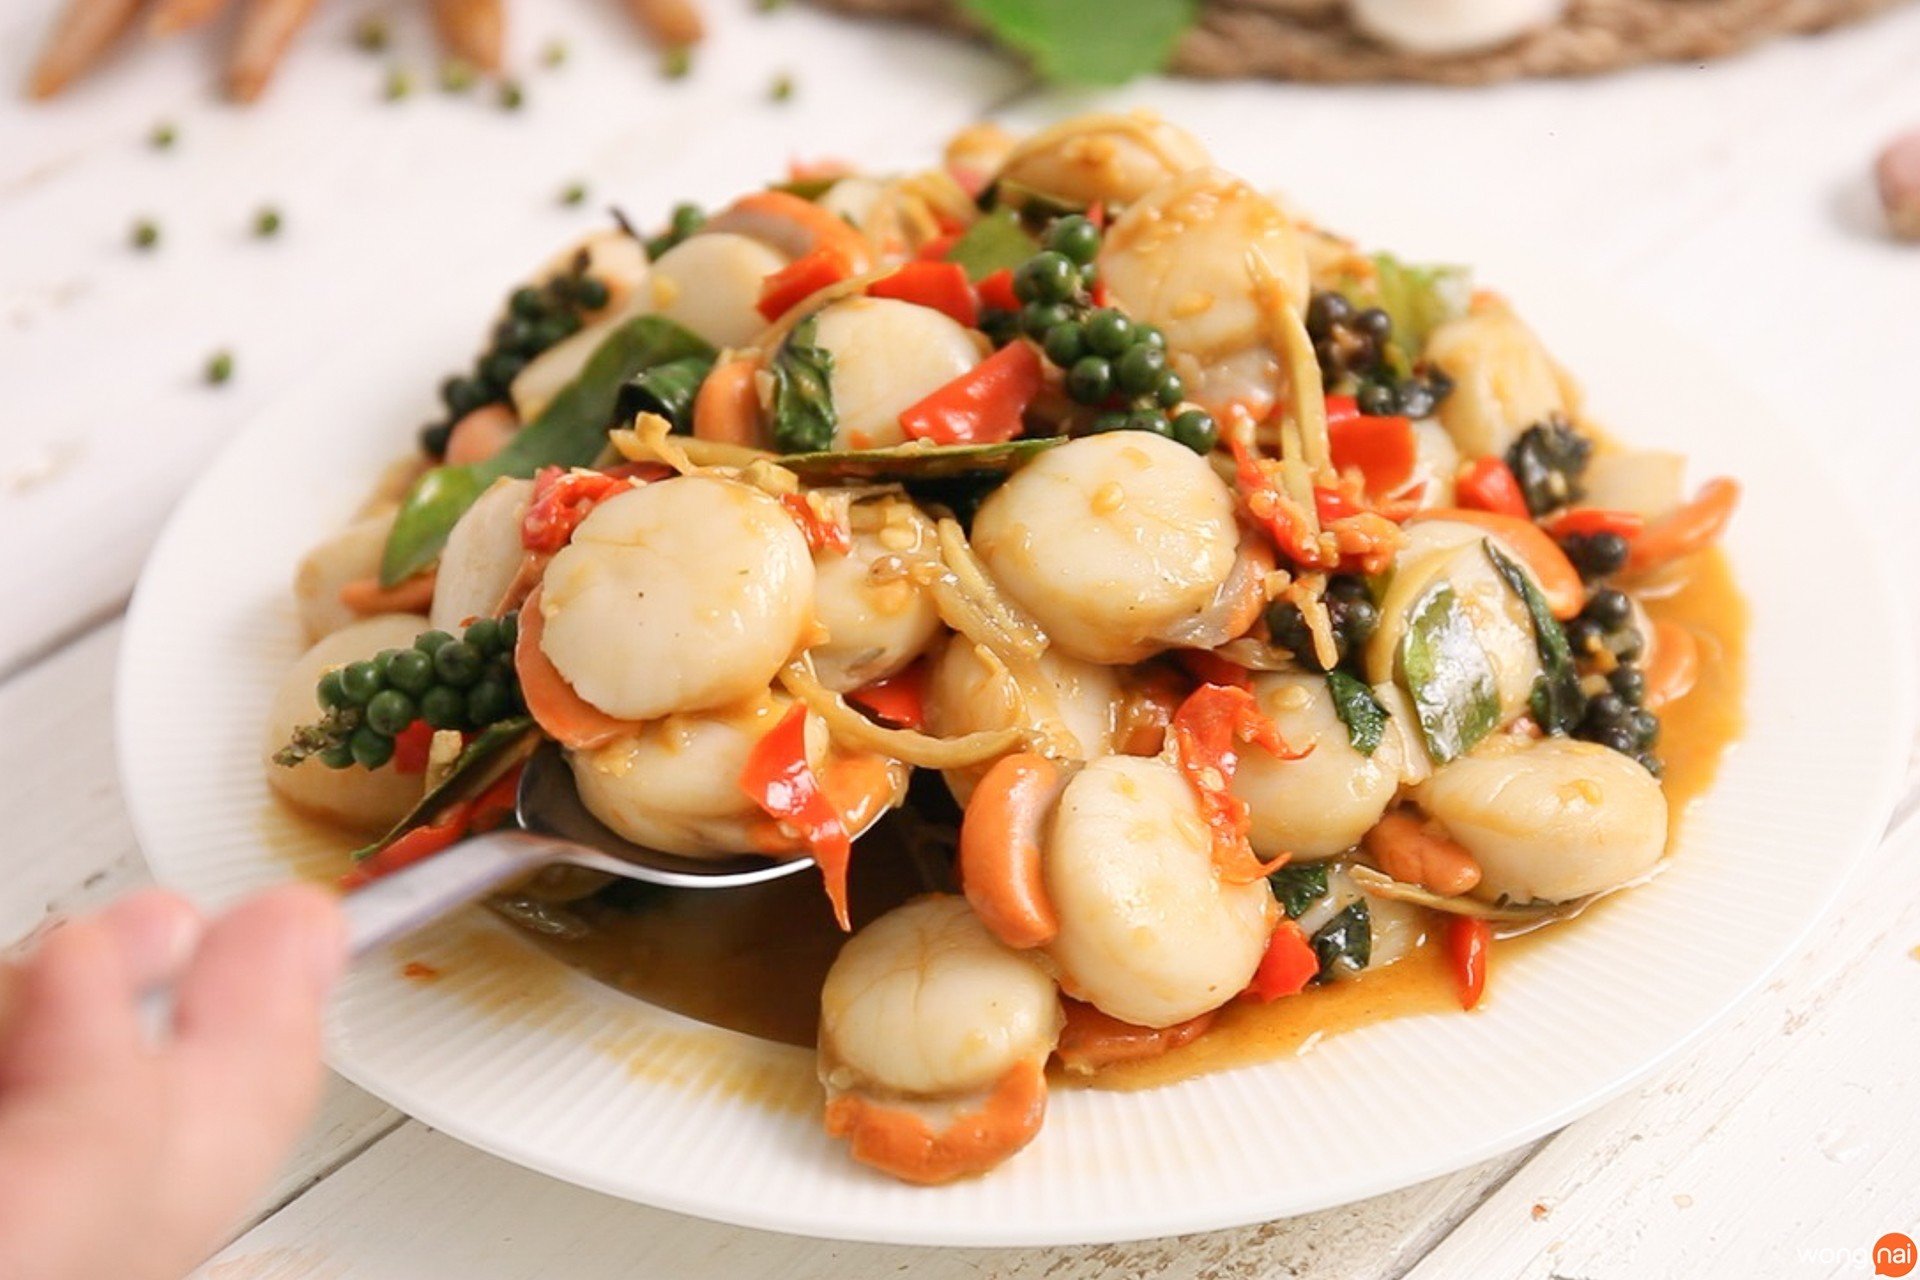 รวมเมนูอาหาร สูตรอาหาร หอยเชลล์ ทำง่ายๆ ได้ที่บ้าน - Wongnai Cooking